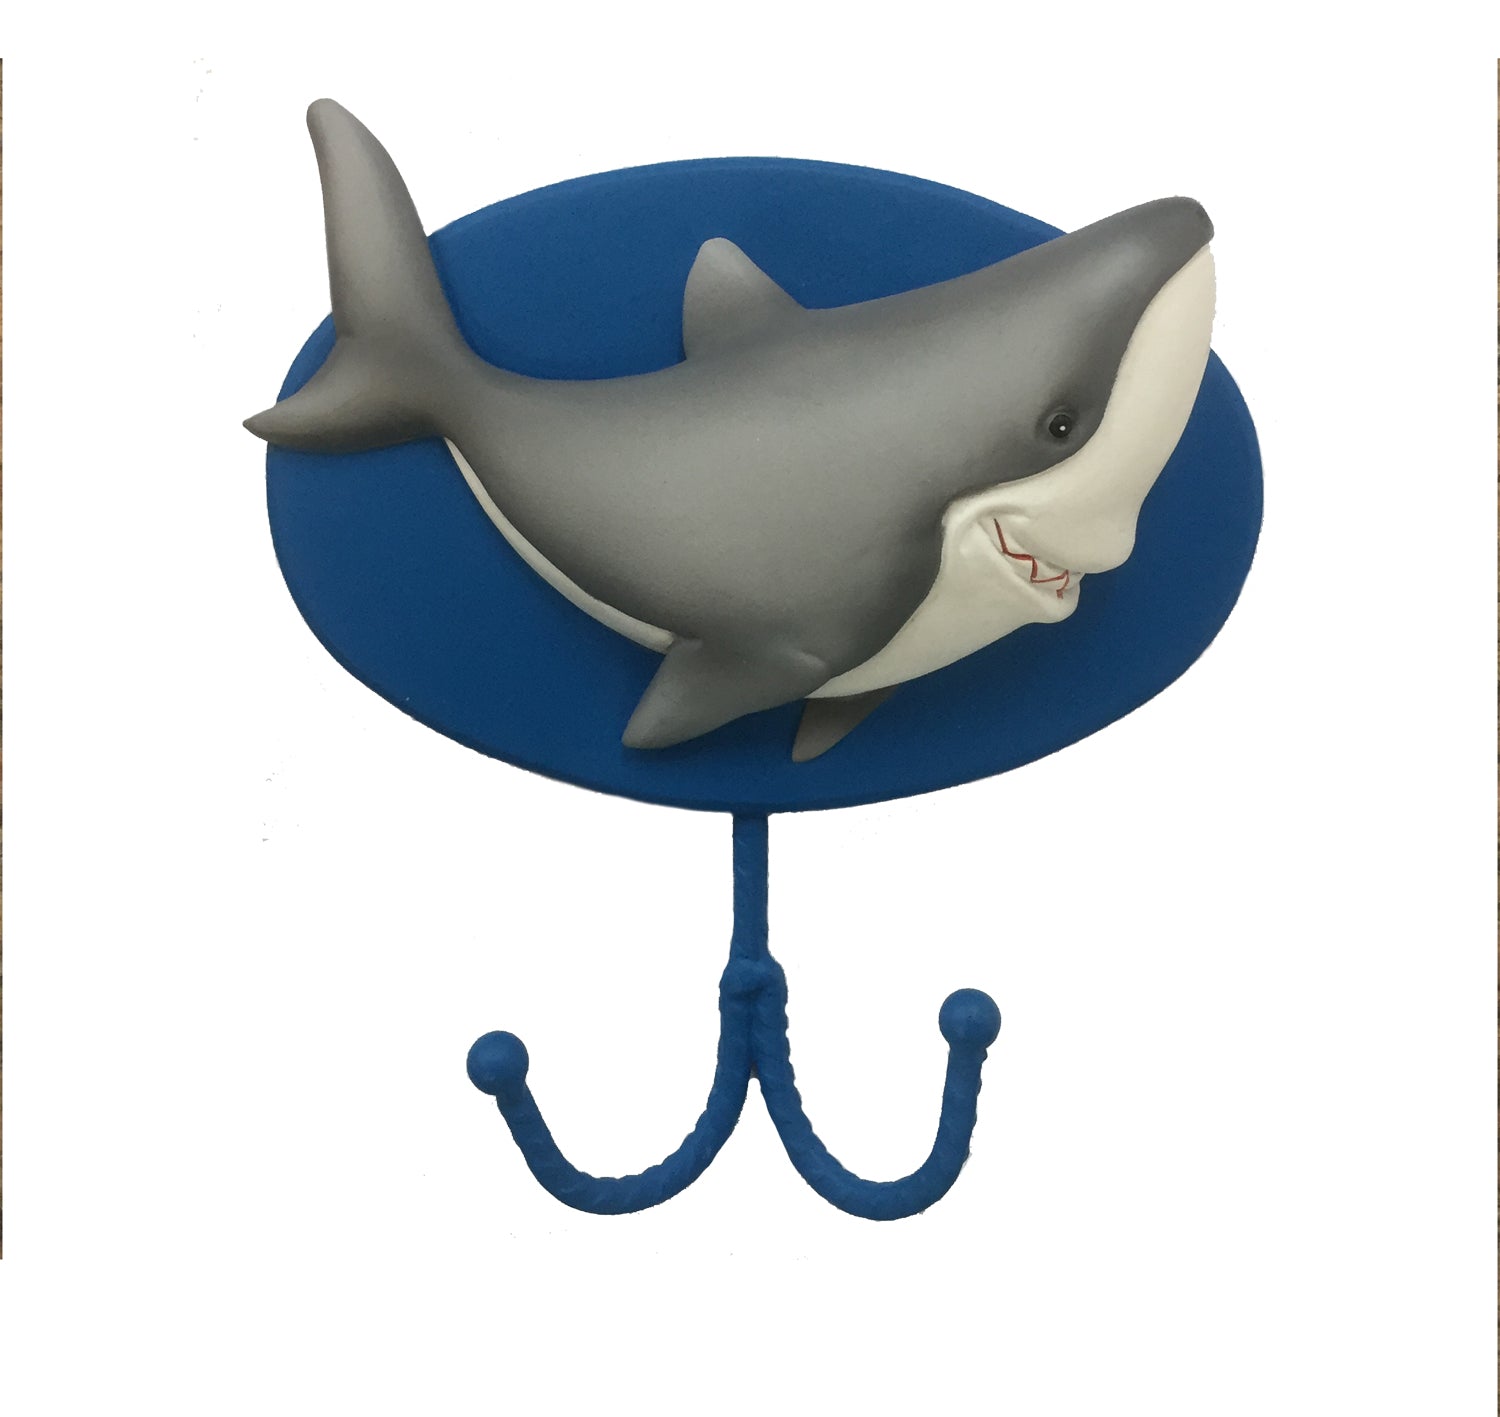 Fish 'n Sharks Towel Hook – Borders Unlimited